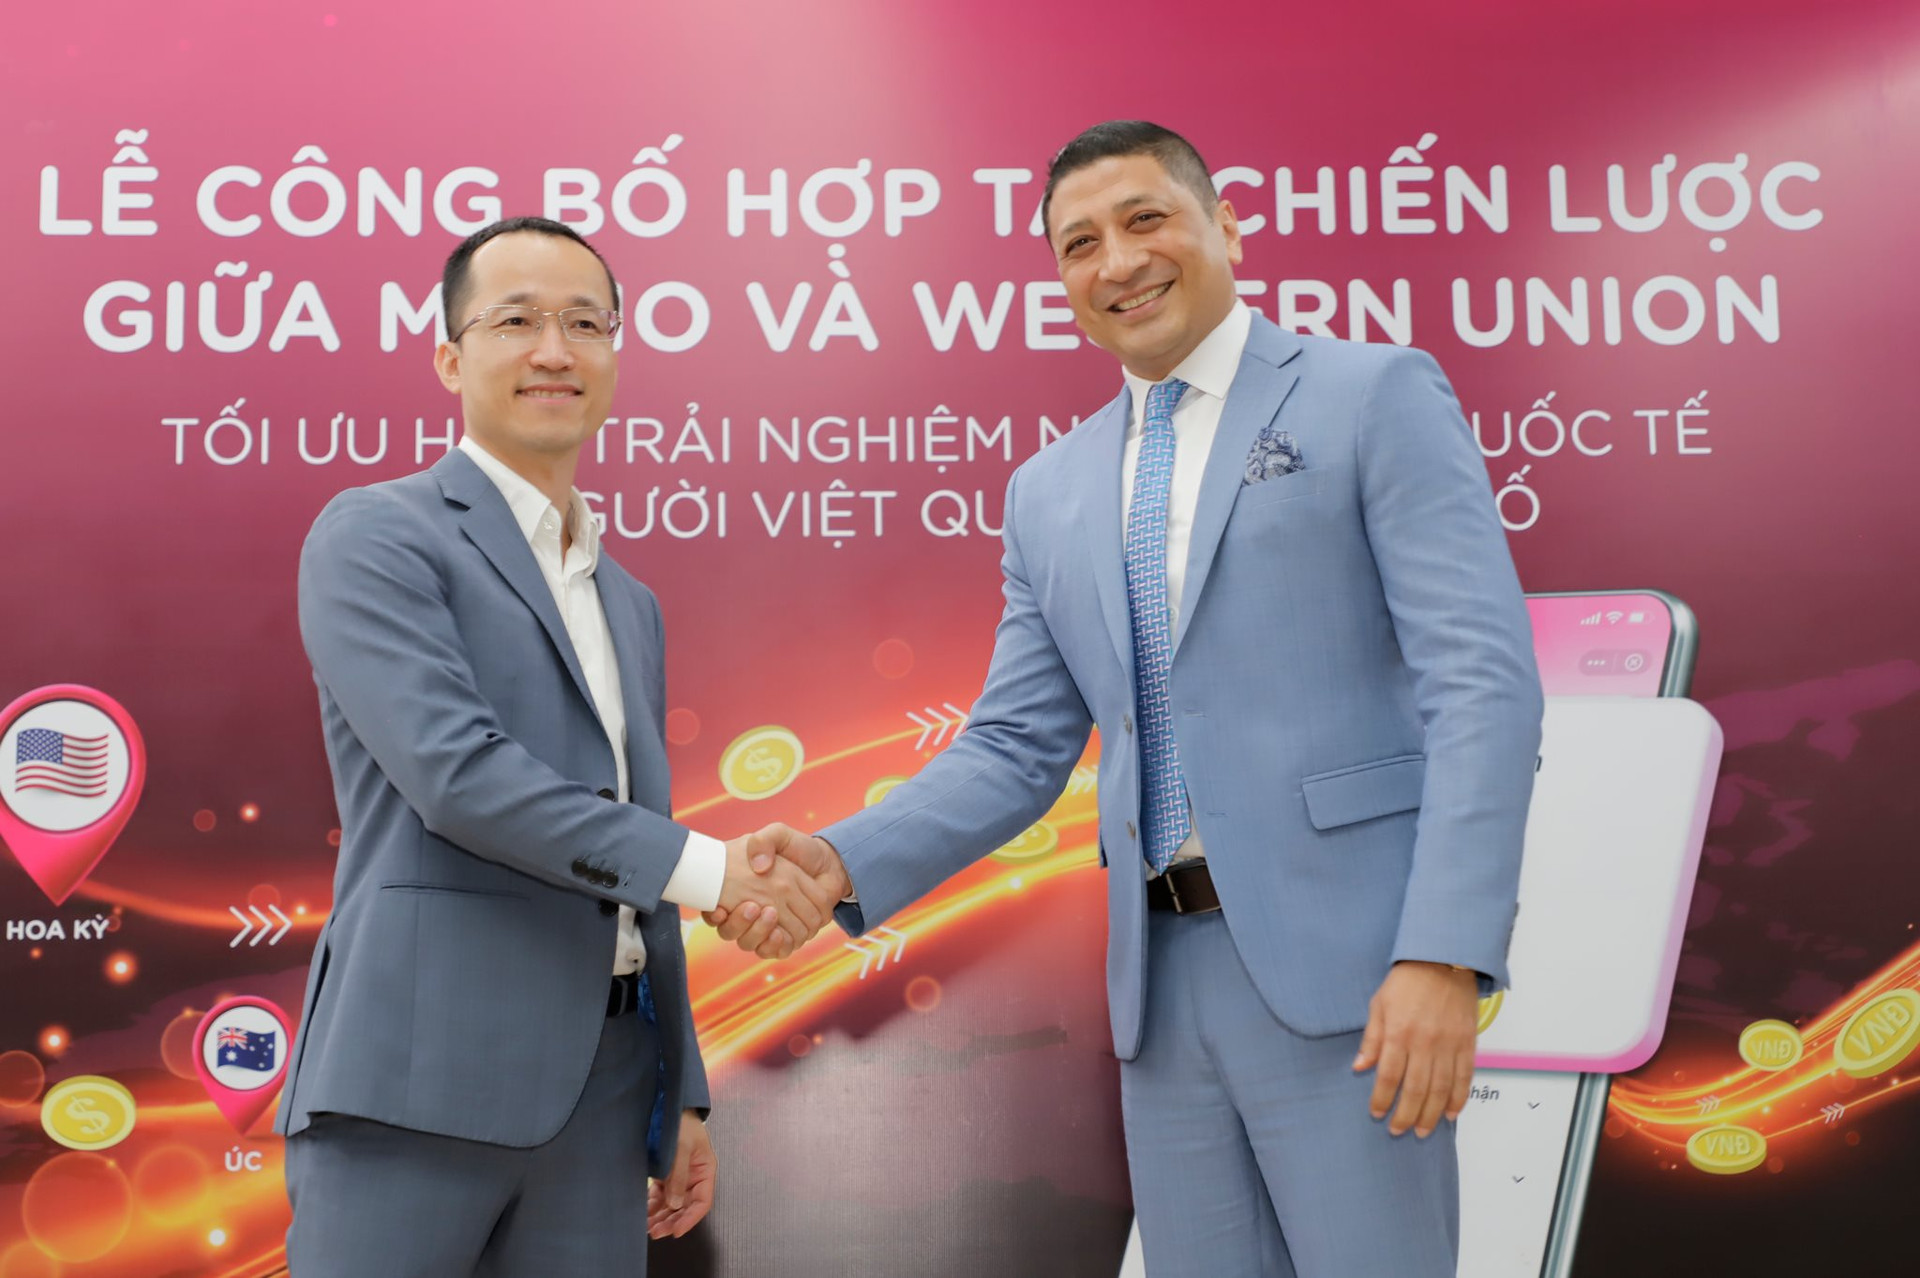 “Kỳ lân” MoMo hợp tác Western Union cung cấp dịch vụ giúp người dùng Việt nhận tiền từ nước ngoài chỉ trong 1 phút